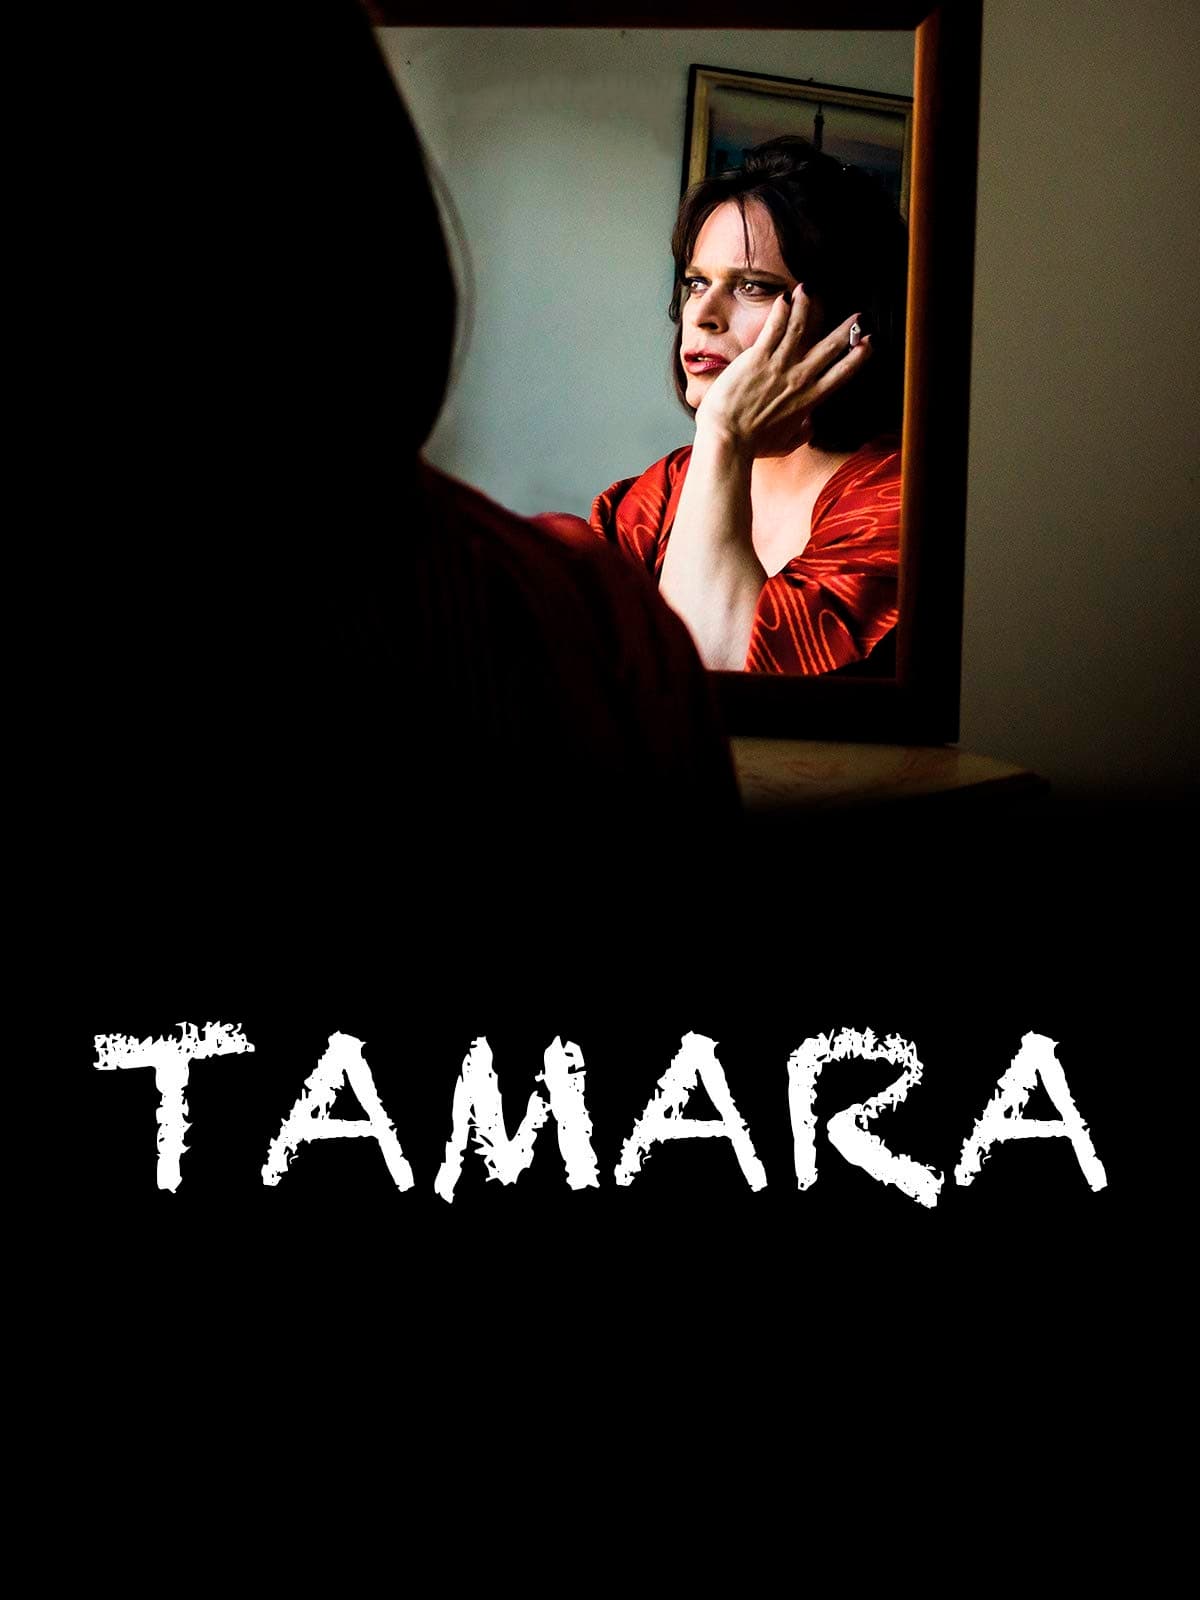 Tamara (2016)